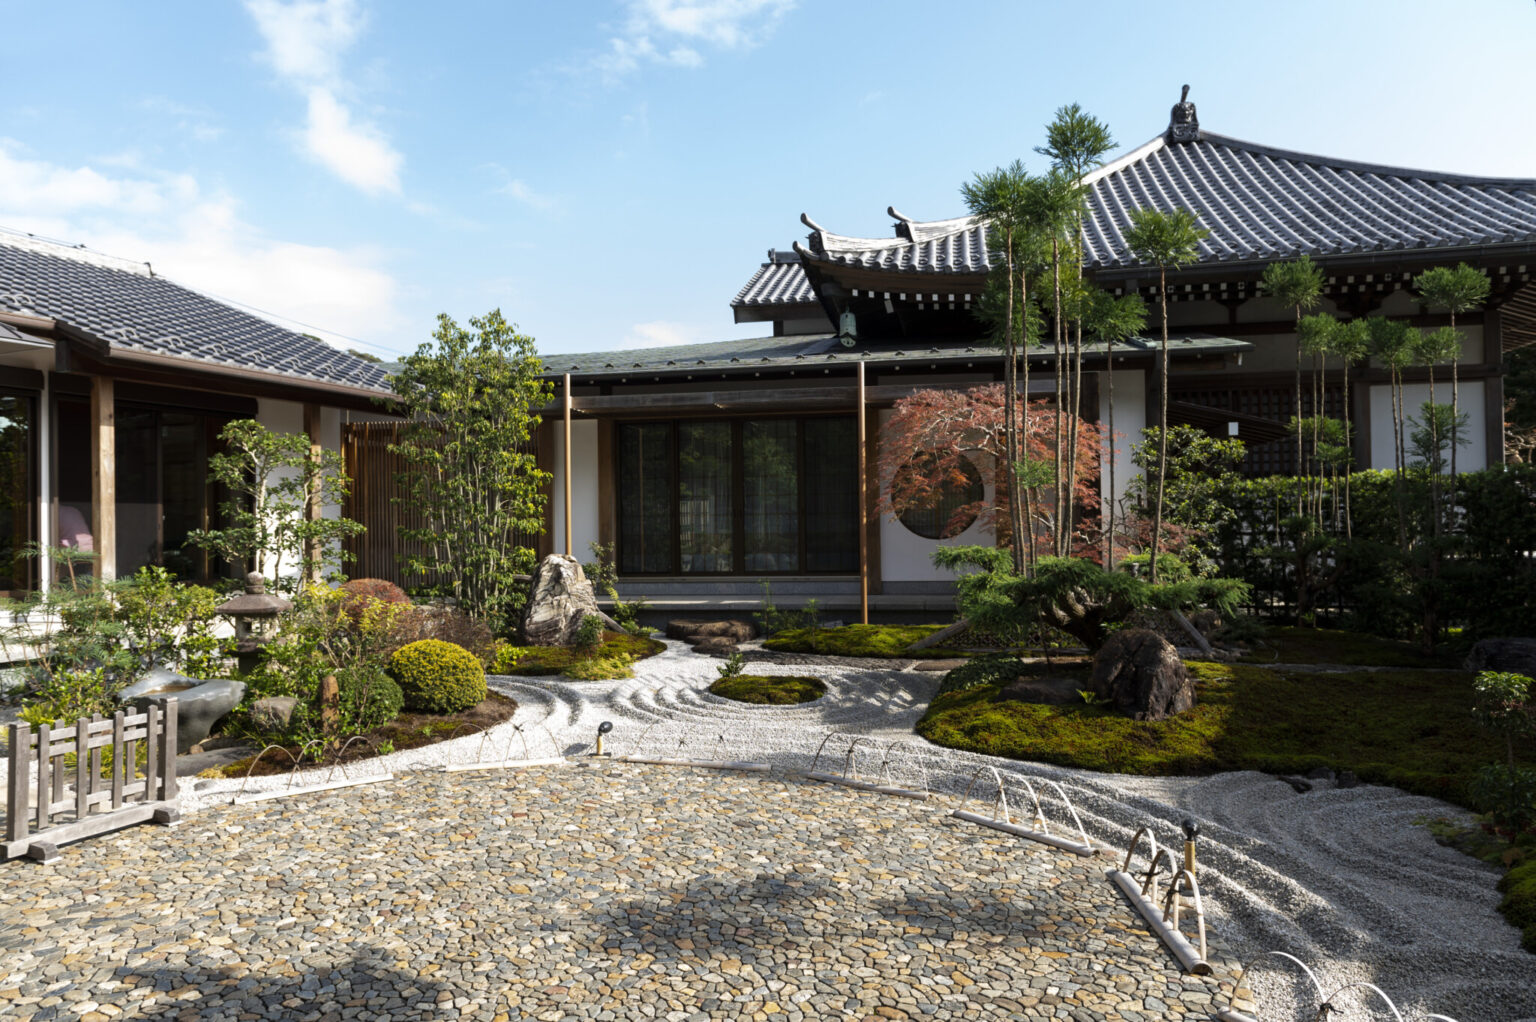 日本の美を実感できる庭園が広がる写経場（書院）。この庭園の真ん中の石畳に注目。「あられこぼし」という技法が用いられ、一つだけ違う石が！発見できたら幸せになれるかも。